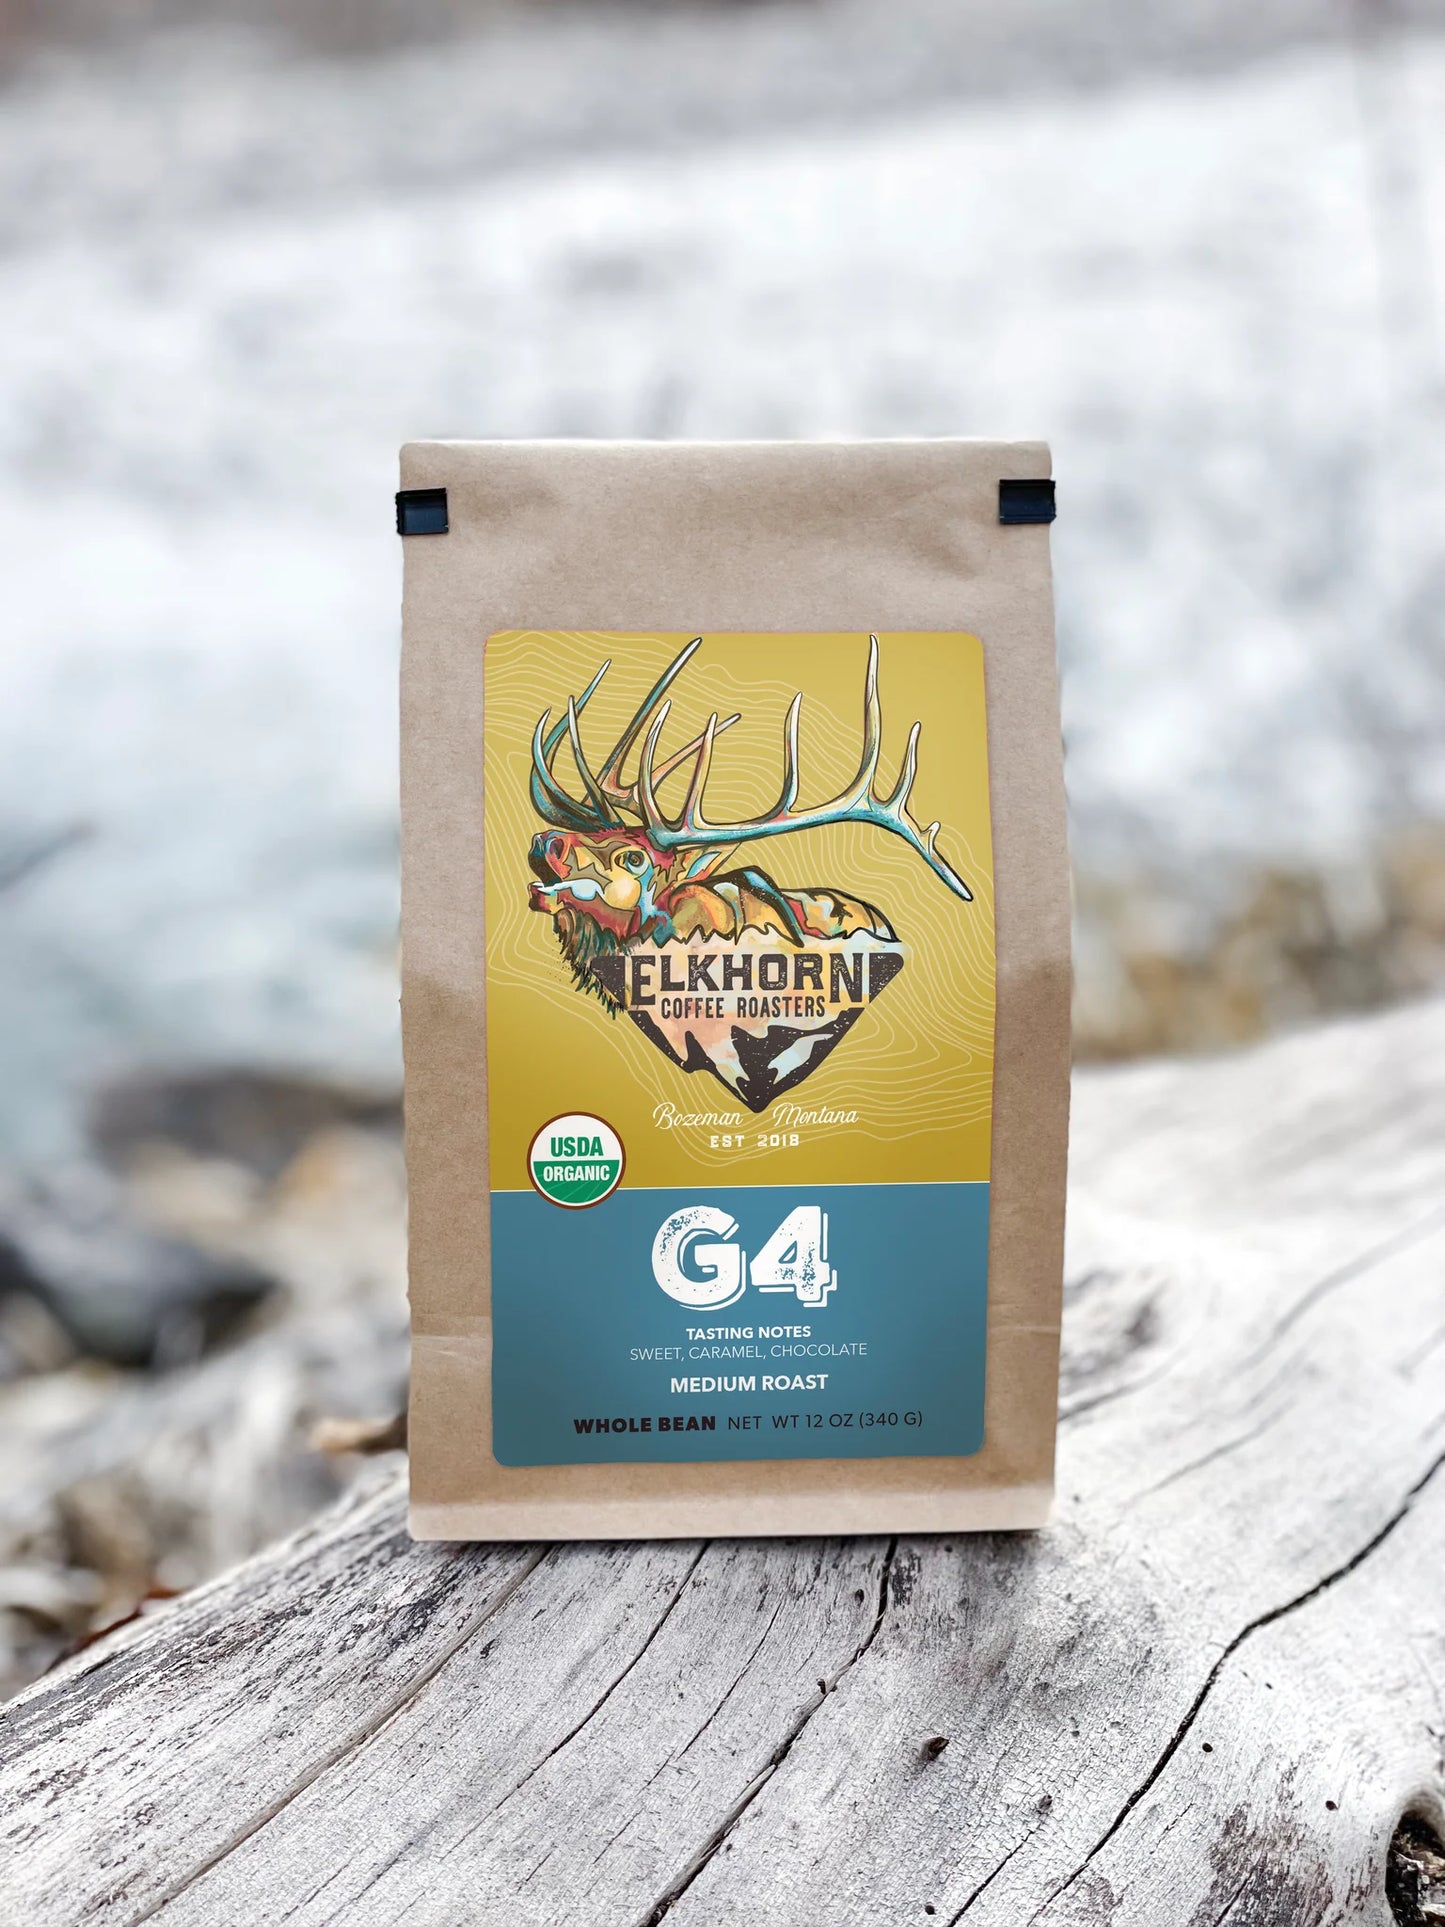 Elkhorn Coffee Roasters G4 Coffee